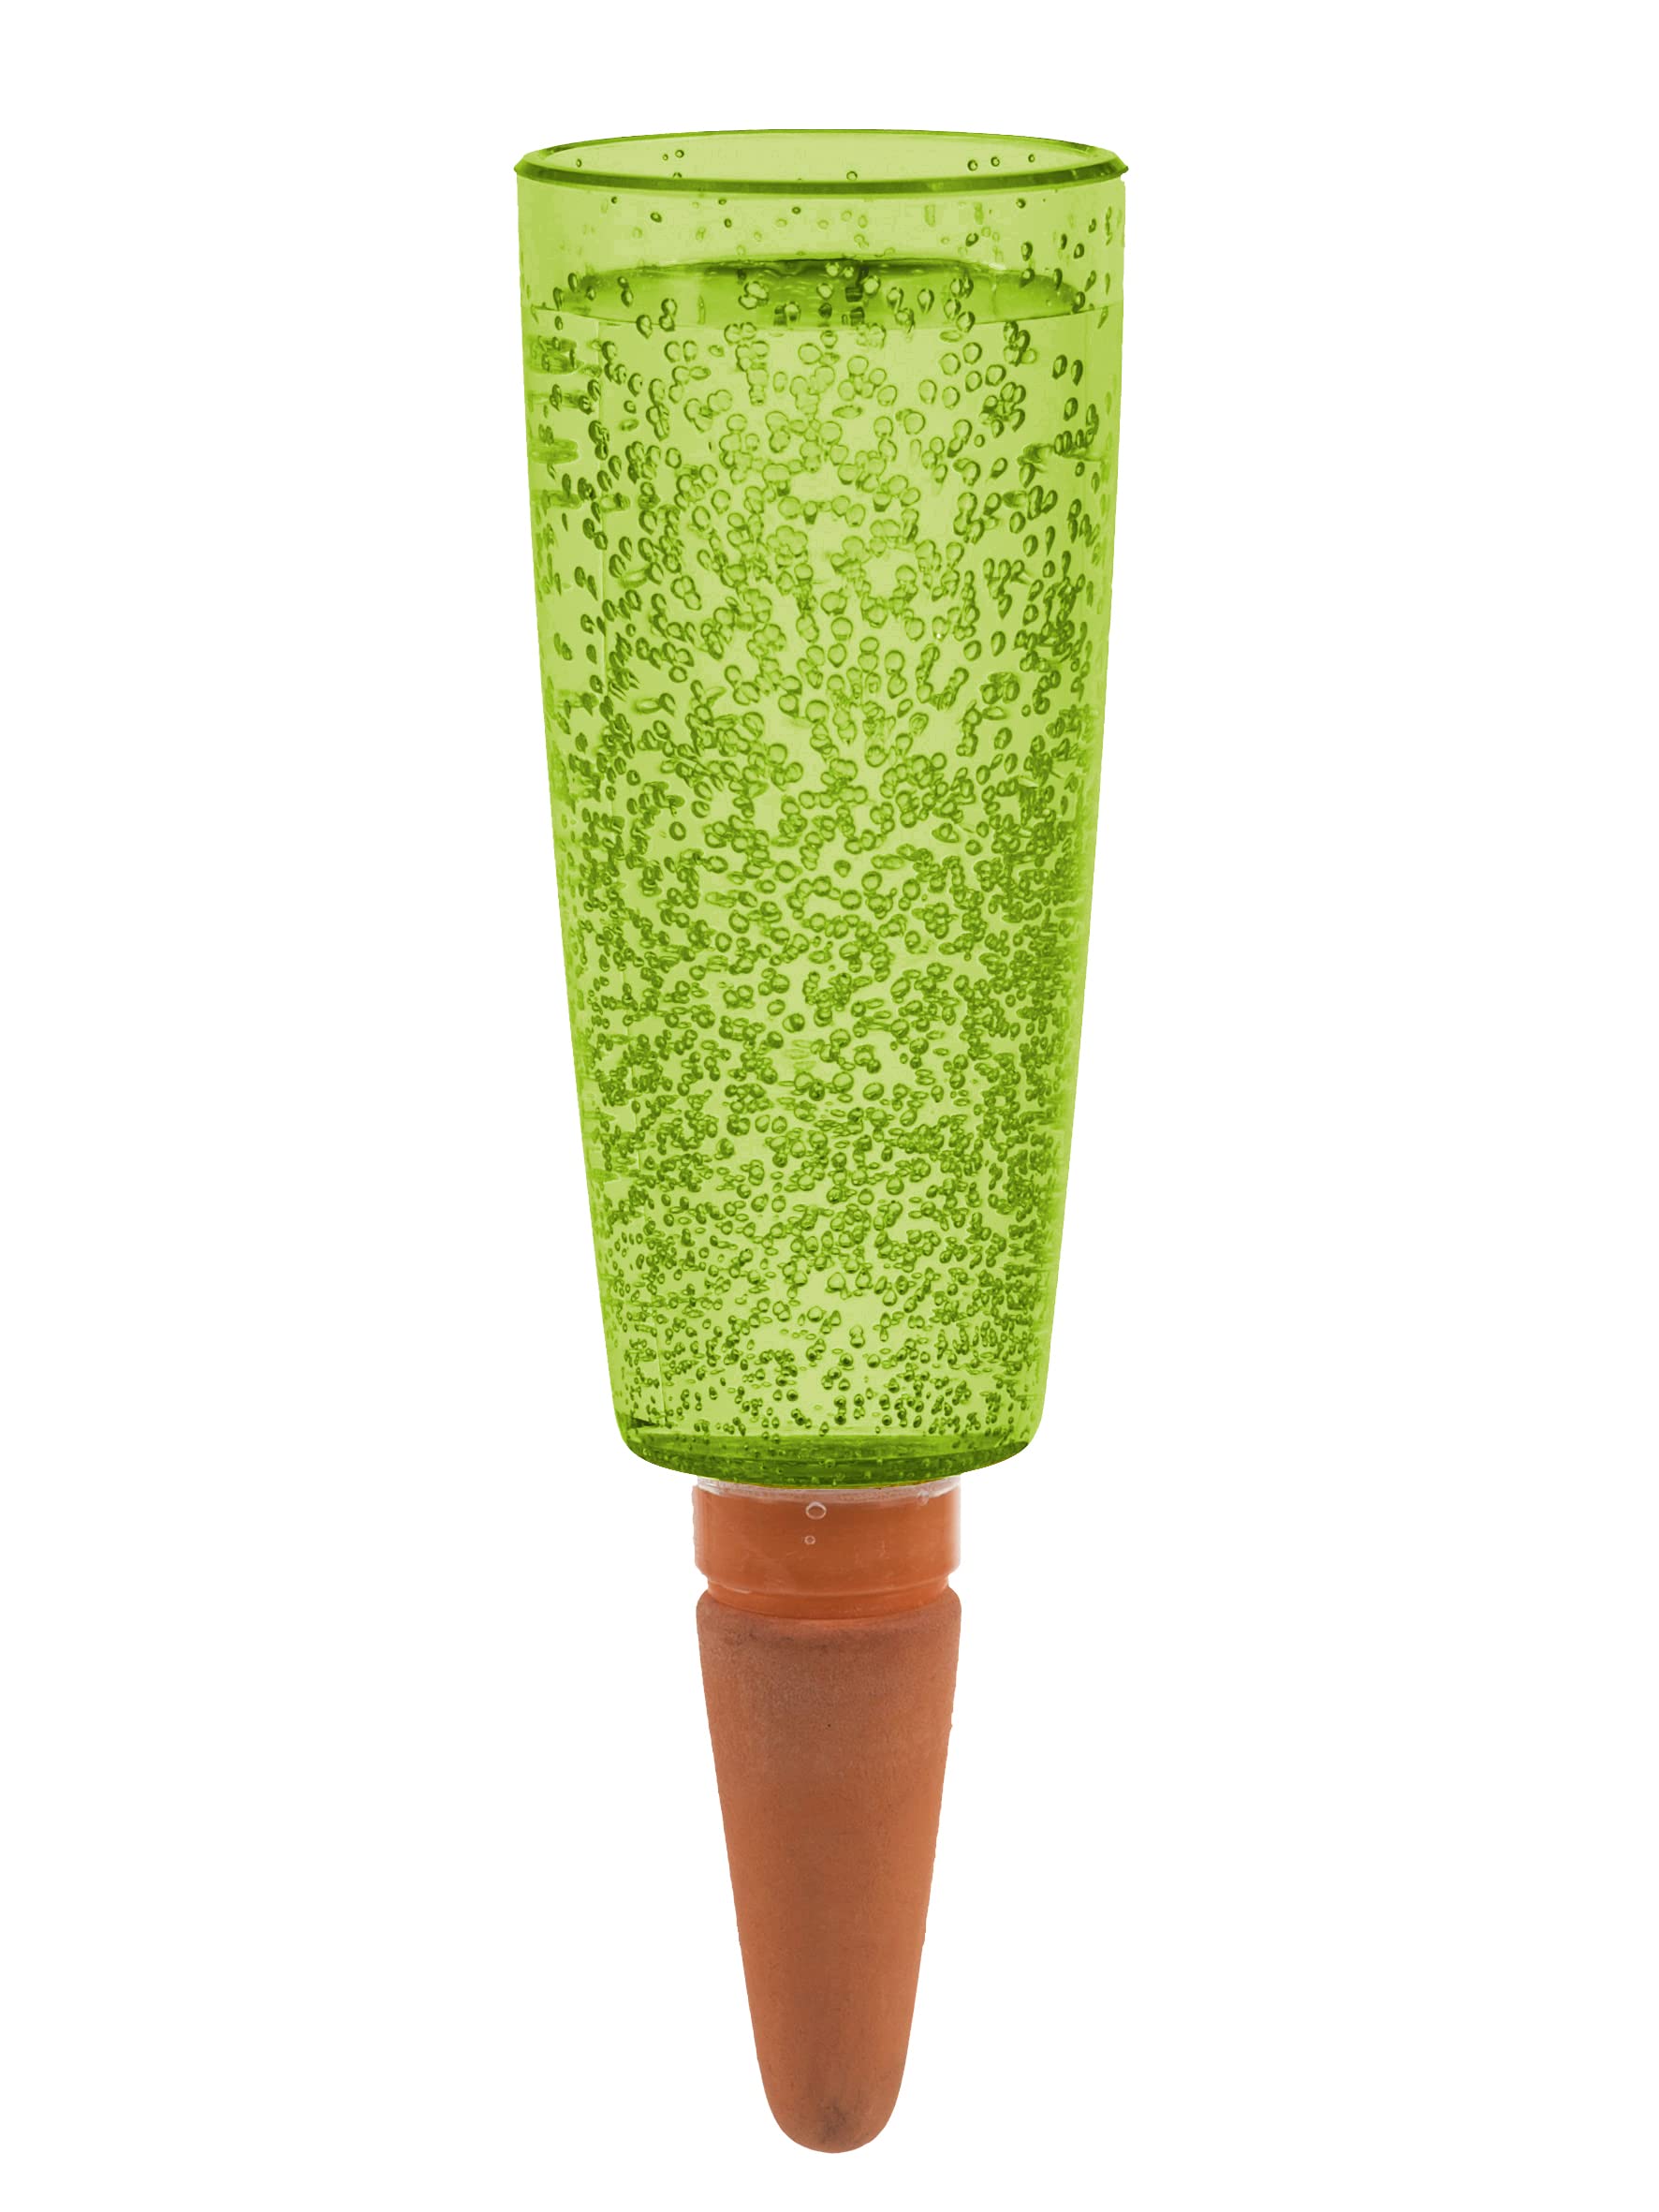 Scheurich Wasserspender Copa XL | 3X Grün | 500 ml Füllmenge | Bewässerungskugel klein mit Ton Fuß | Wasserspender Pflanzen und Blumen Terrakotta Stiel